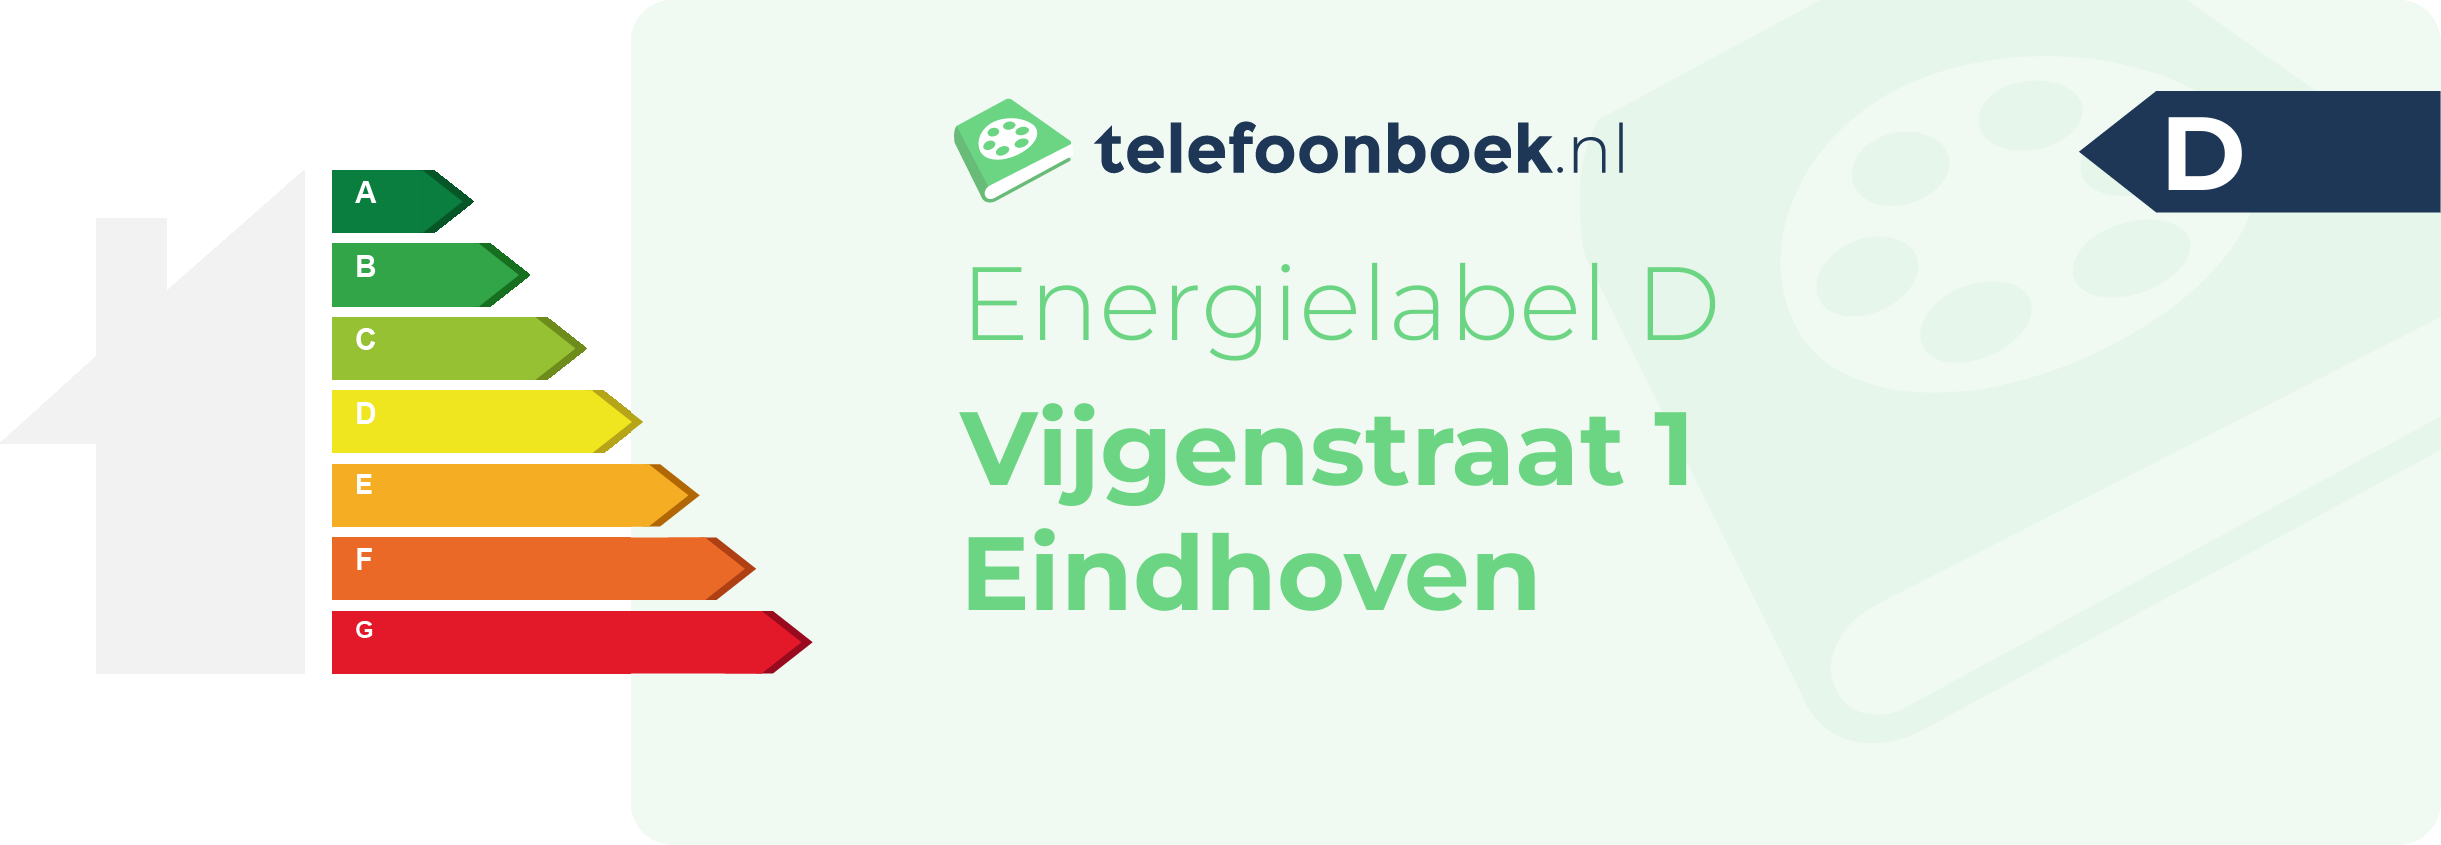 Energielabel Vijgenstraat 1 Eindhoven